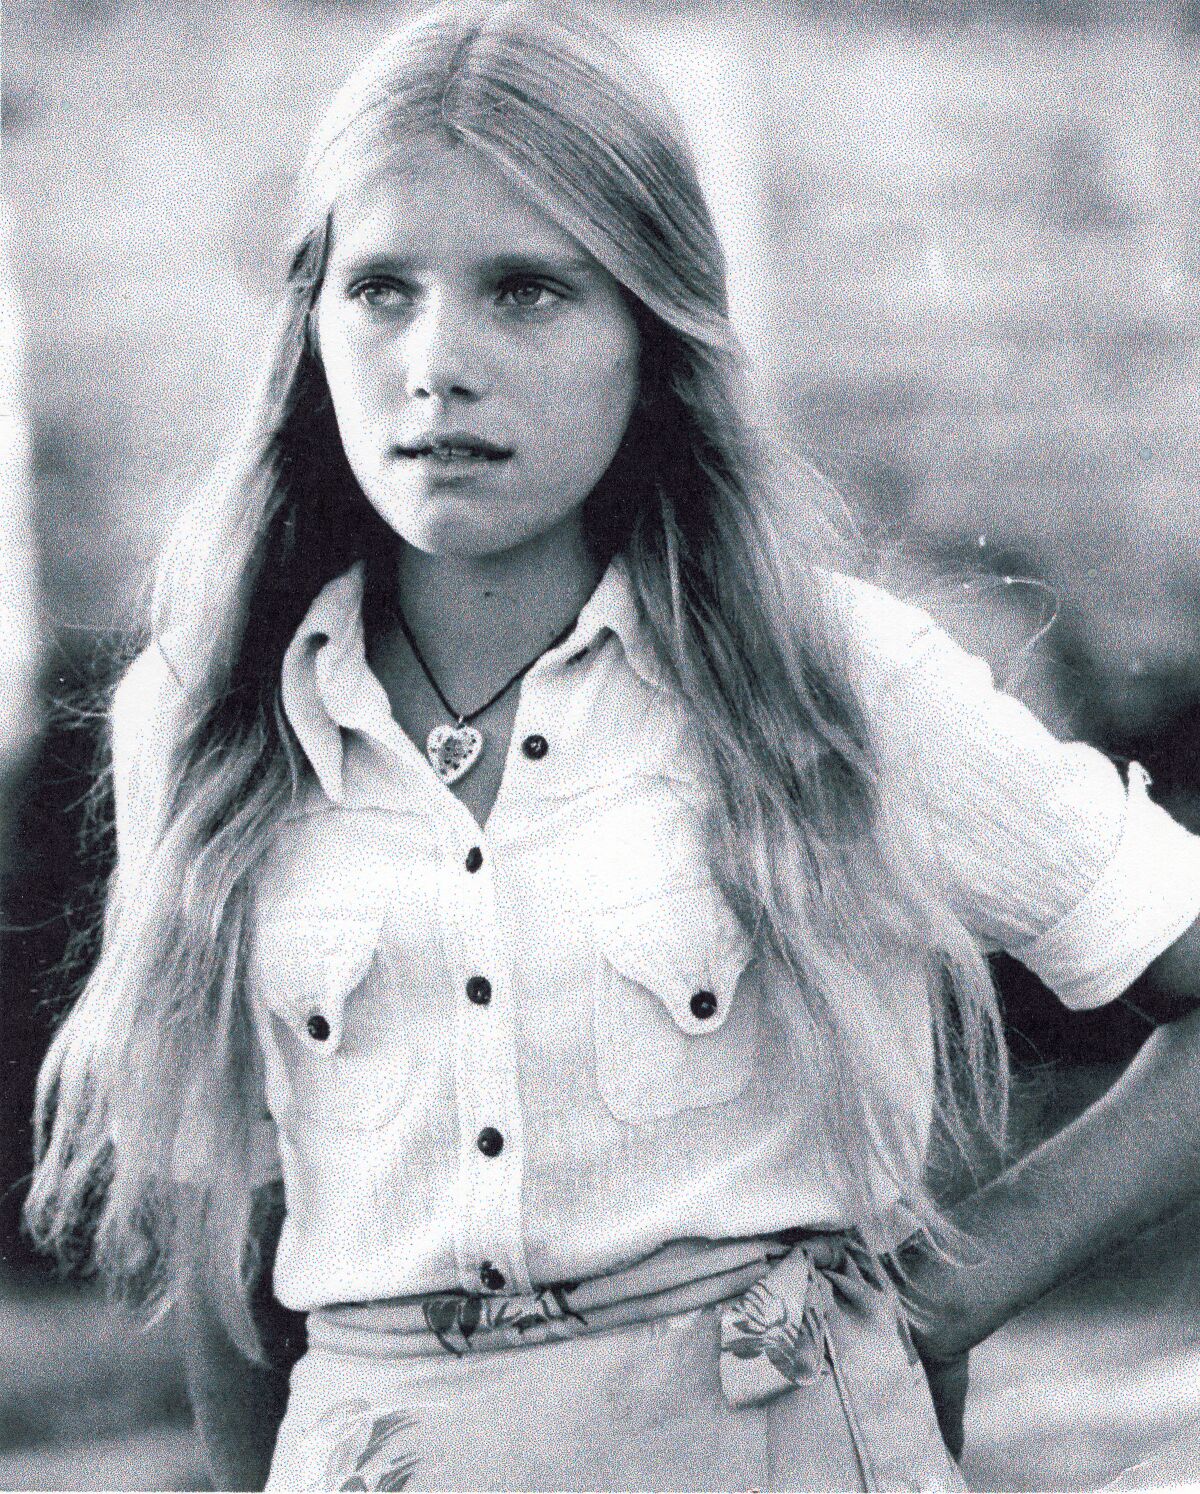 Une photo en noir et blanc d'une adolescente aux longs cheveux raides.